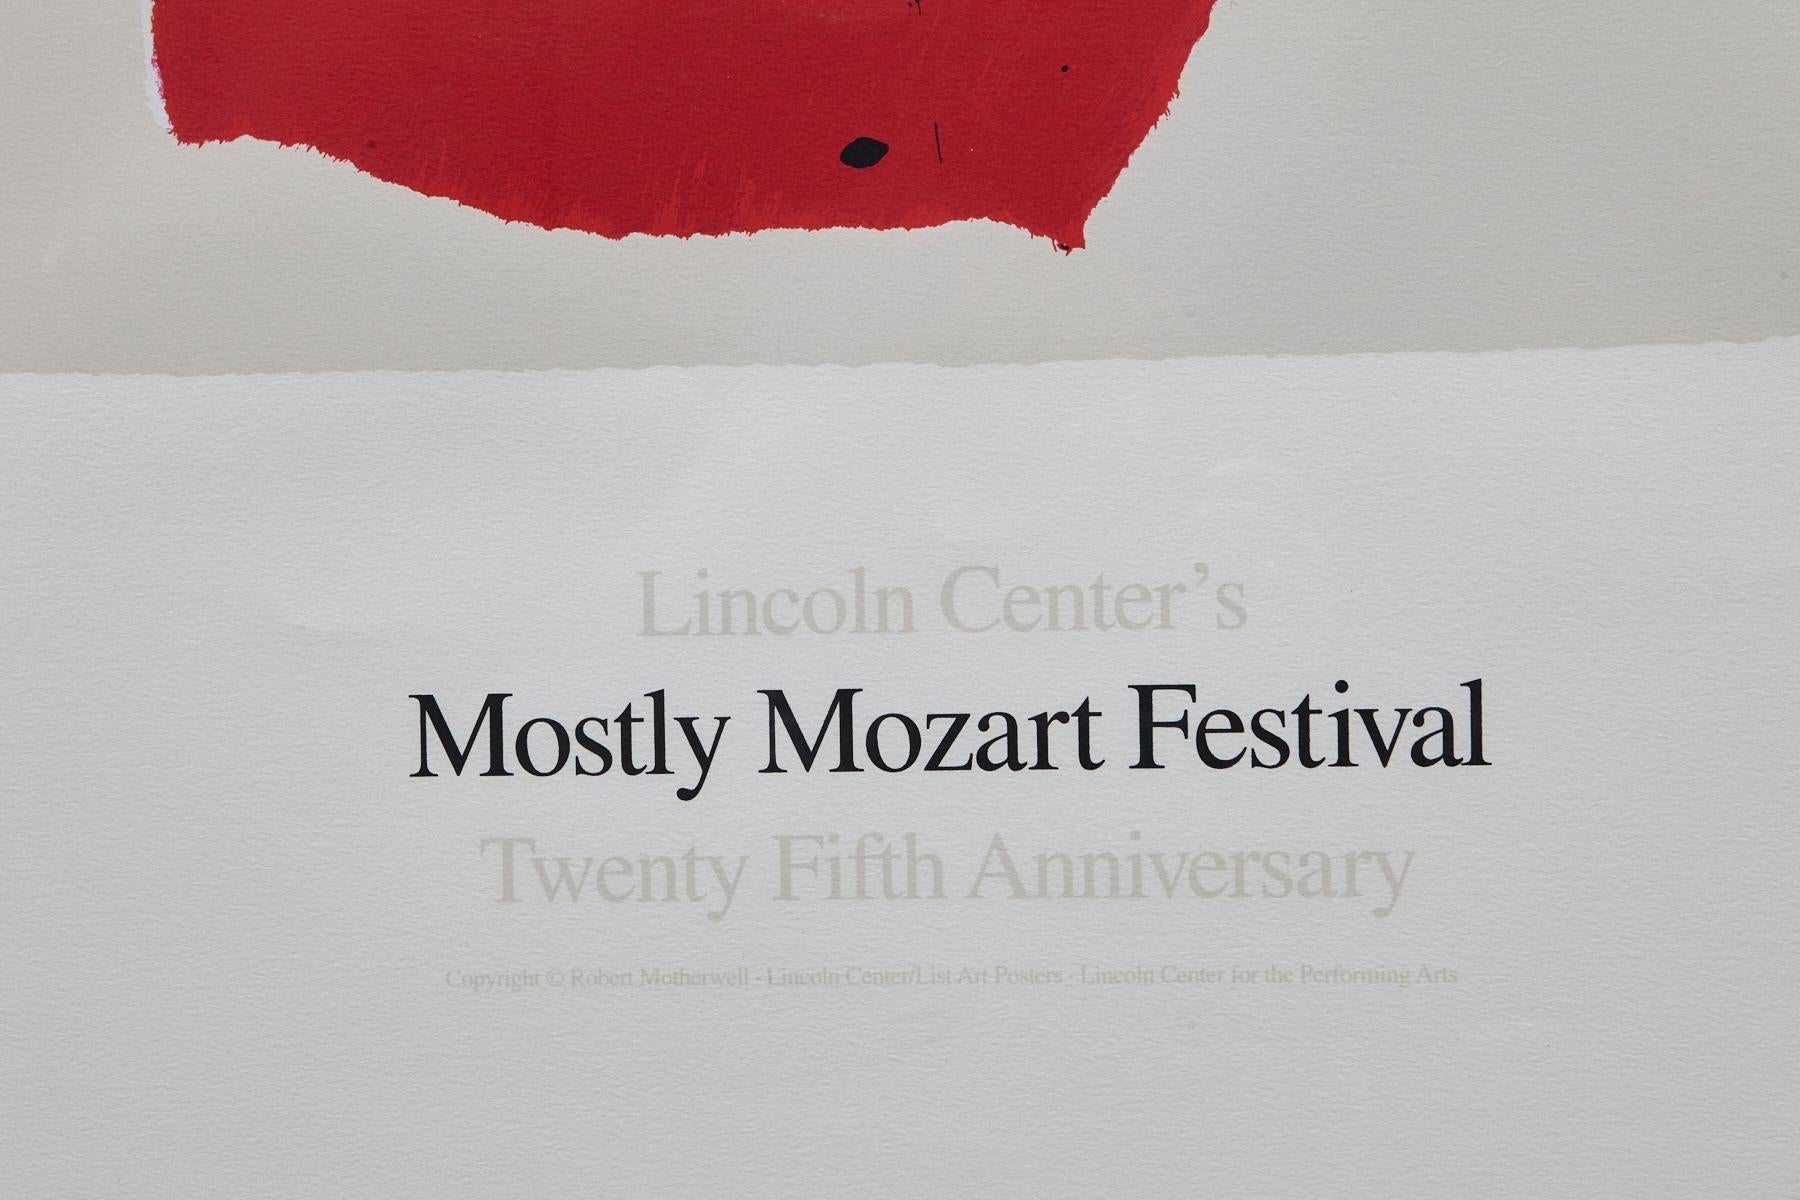 Festival le plus important du Lincoln Center, 25e anniversaire - Gris Abstract Print par Robert Motherwell